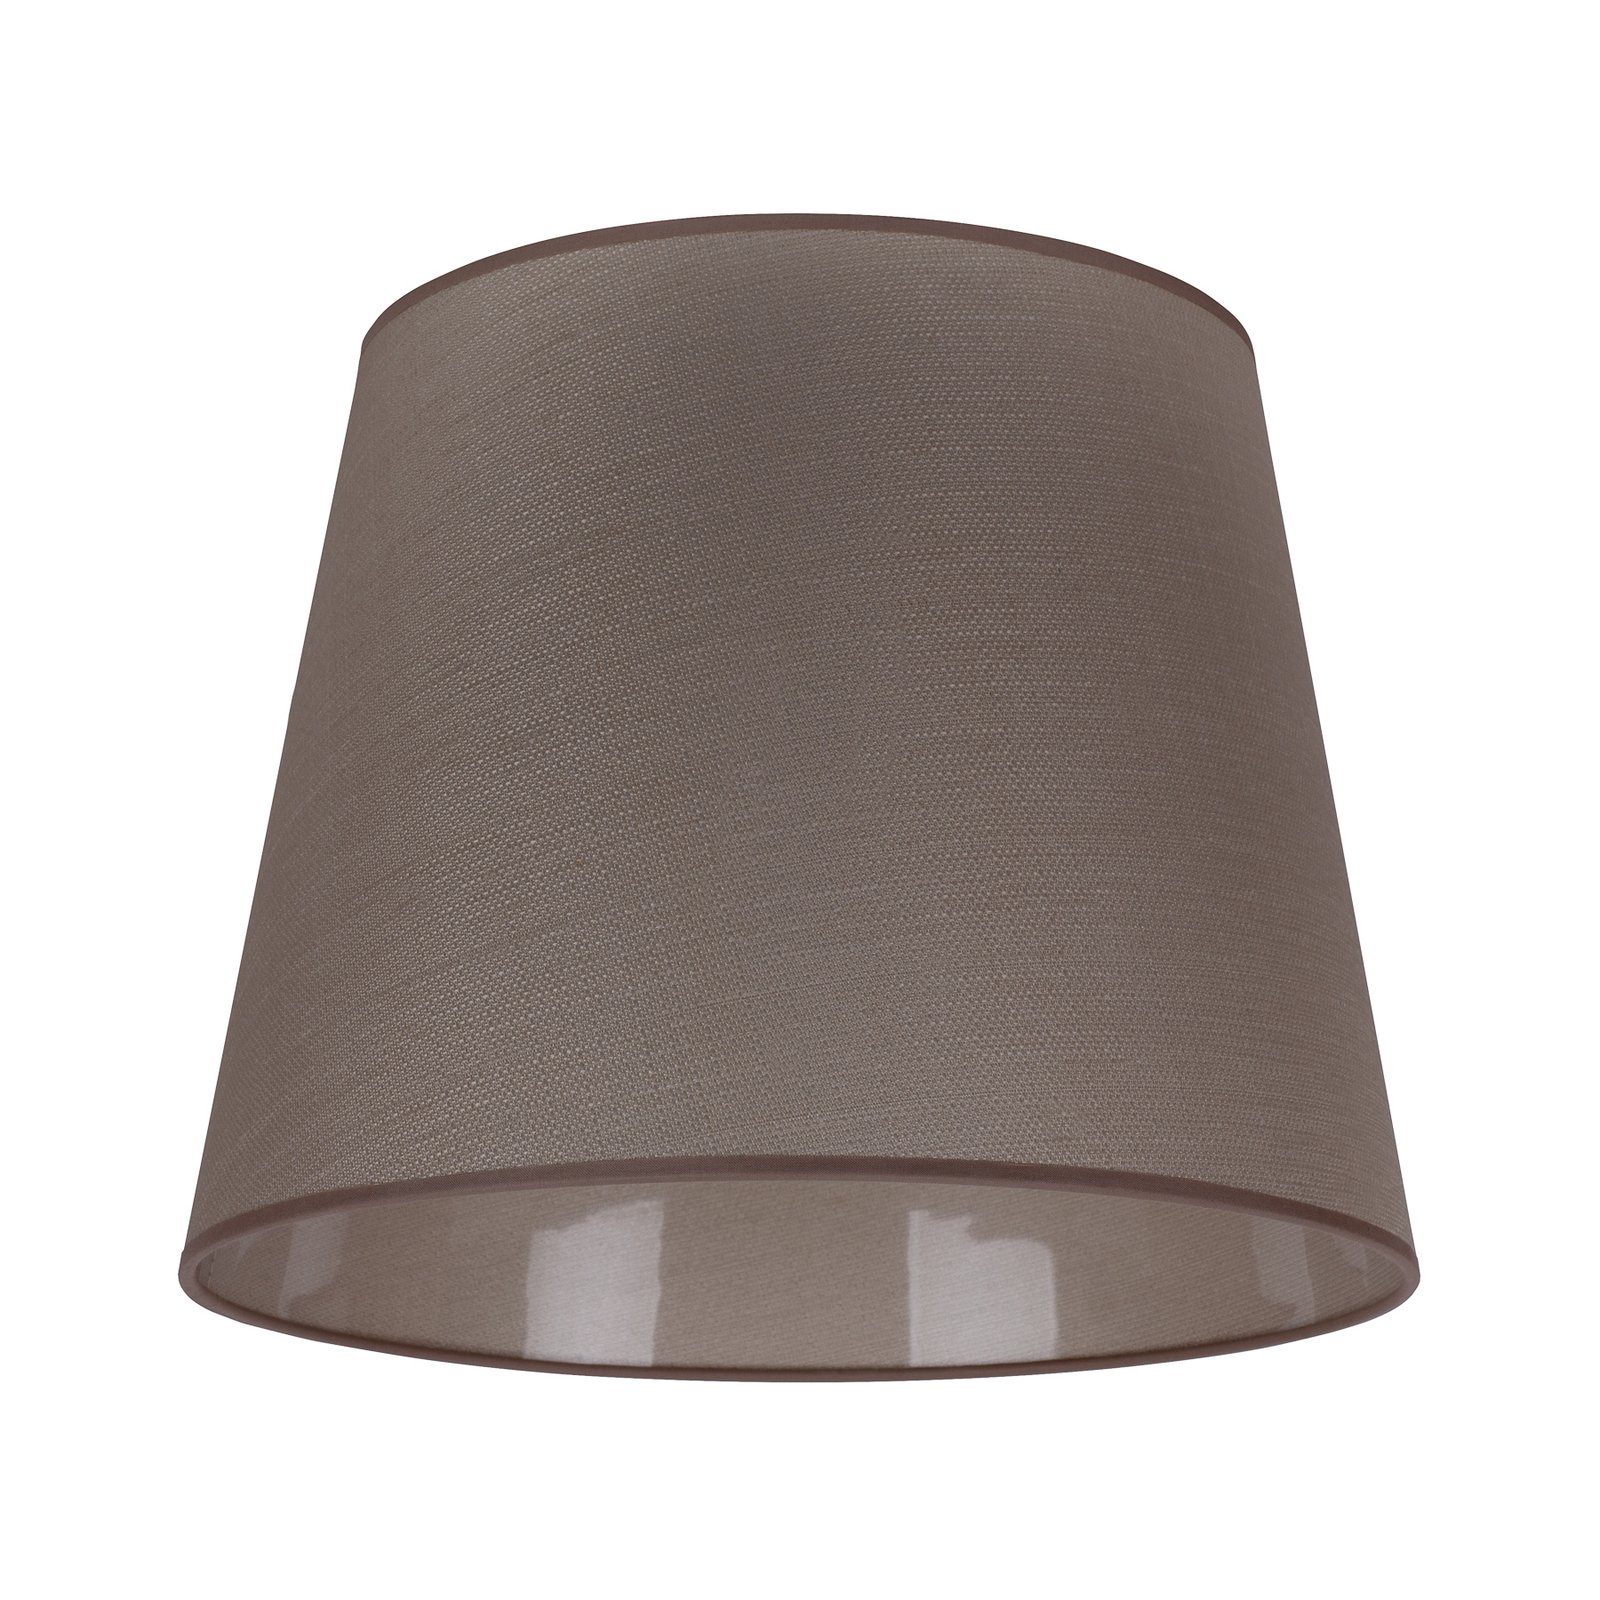 Класически абажур за подова лампа L, бежов цвят Veroni